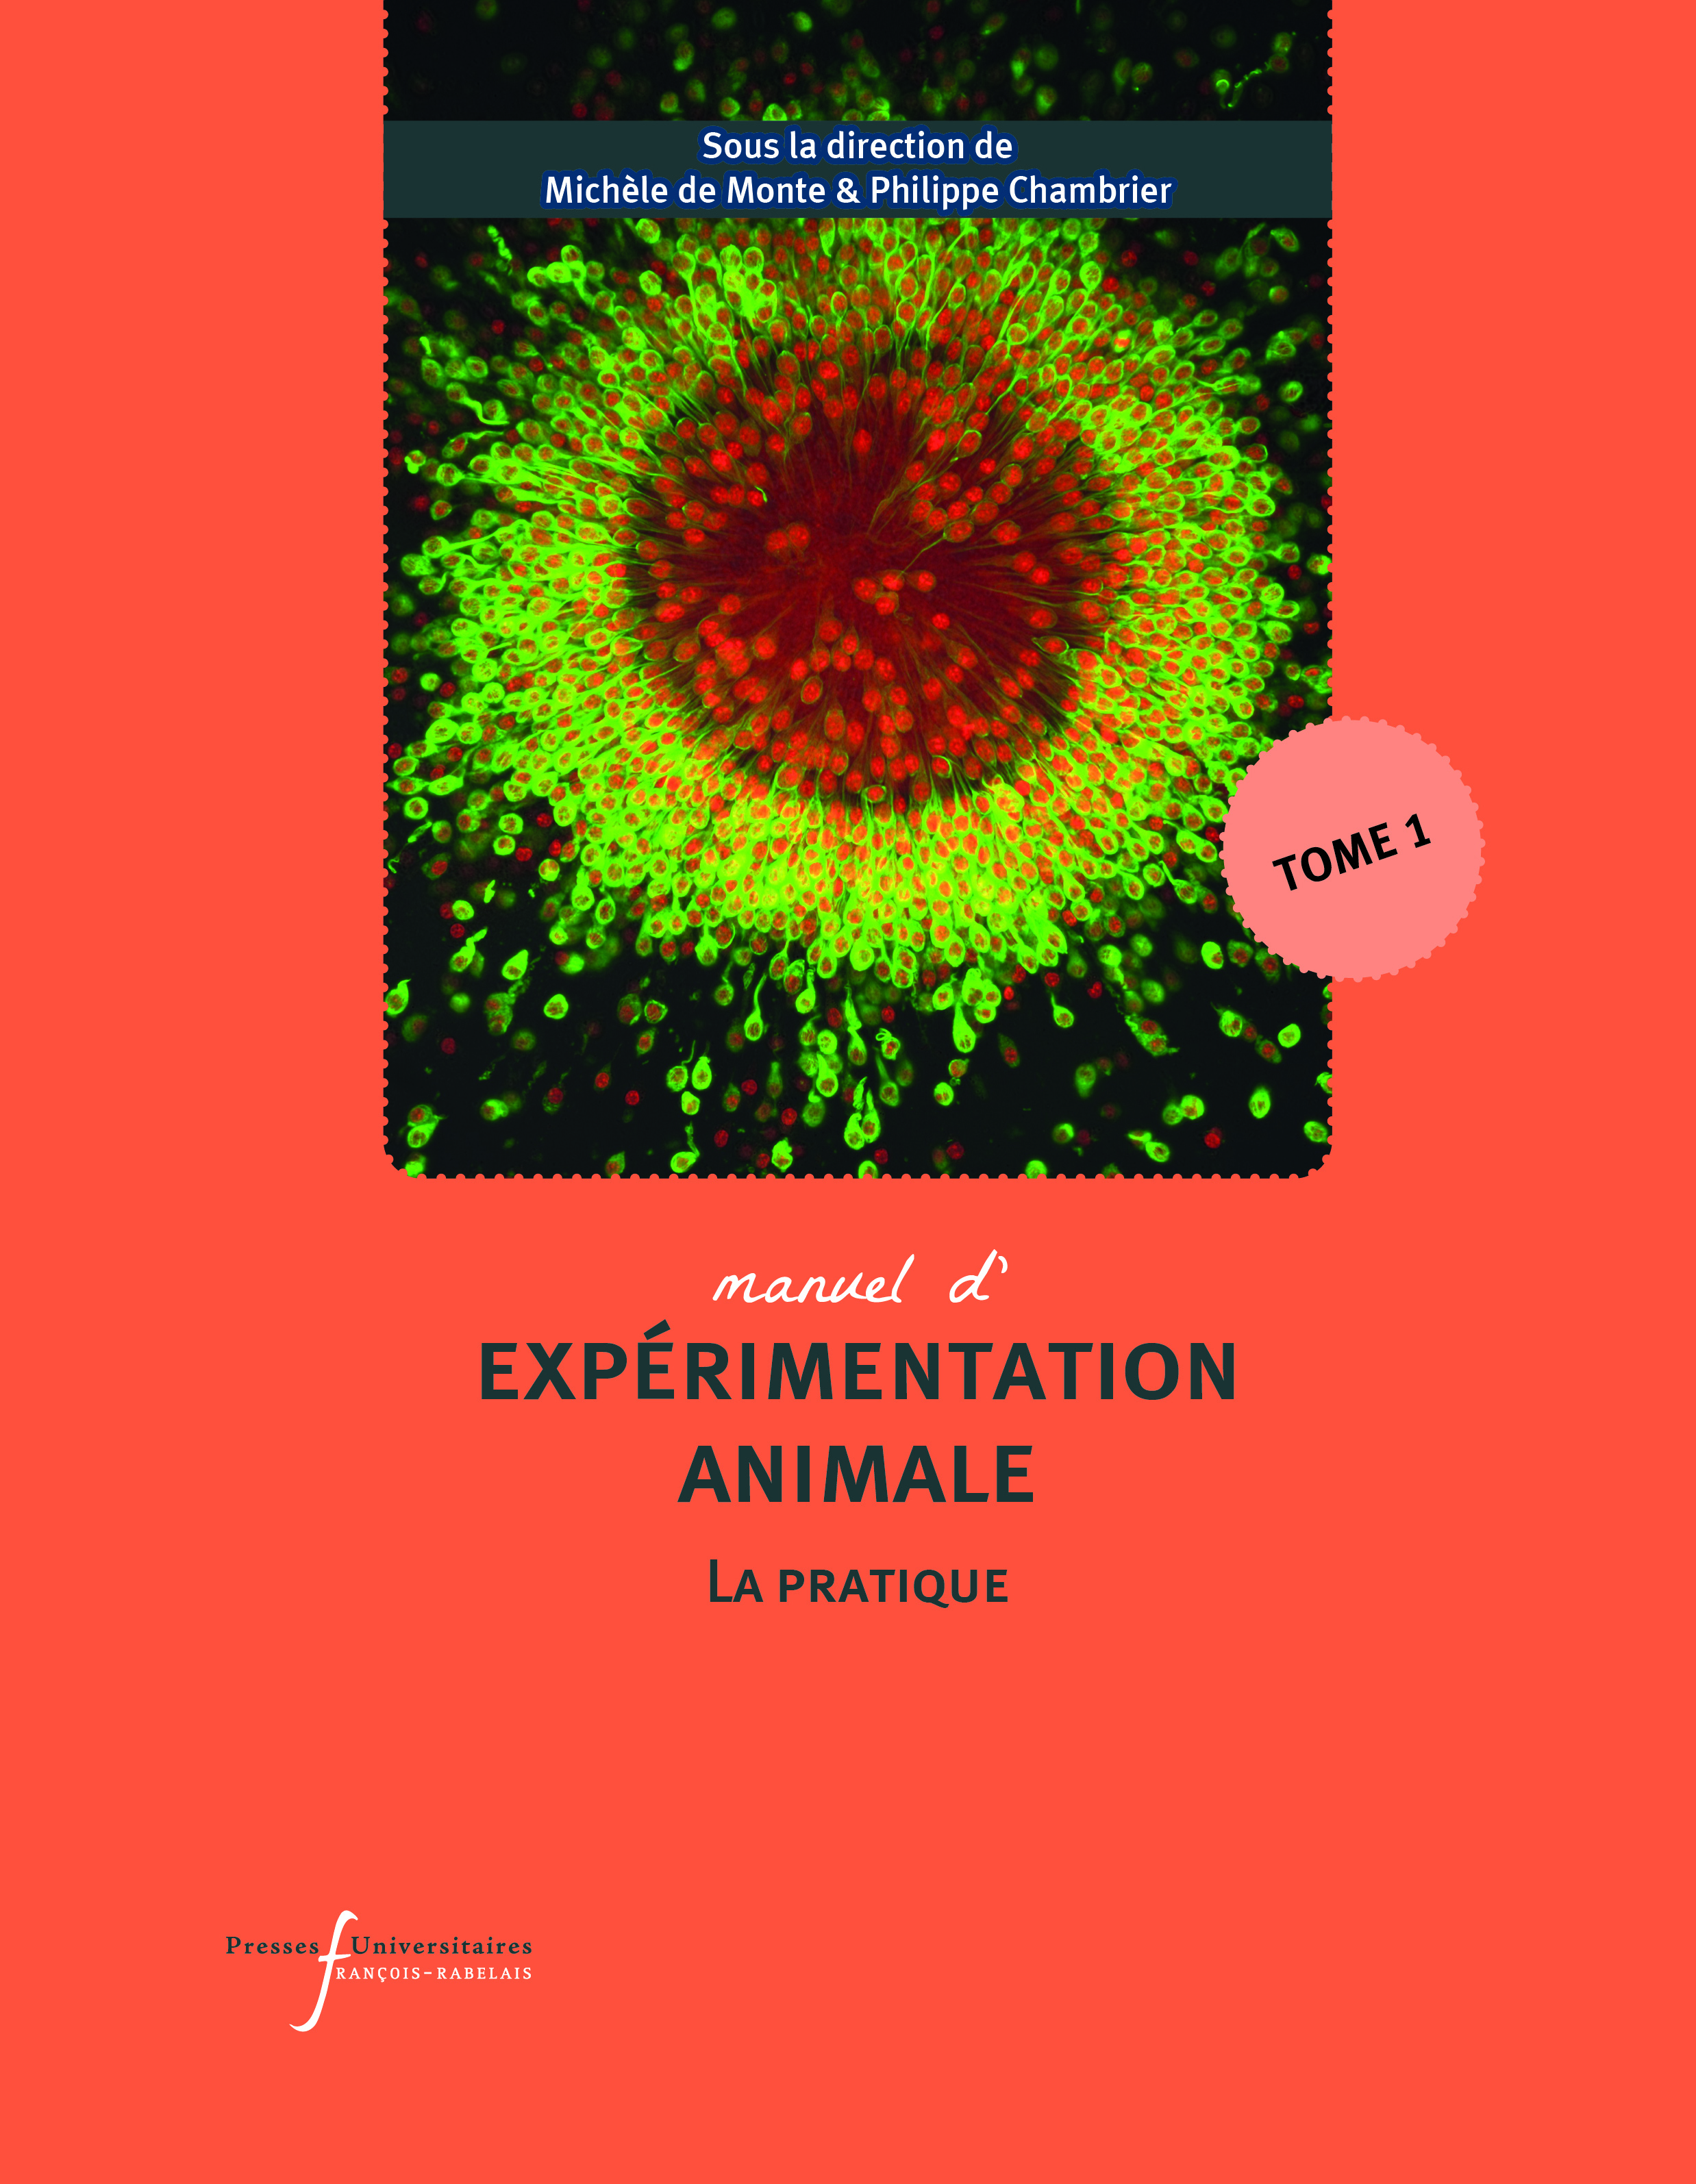 Manuel d’expérimentation animale – La pratique (Tome 1)